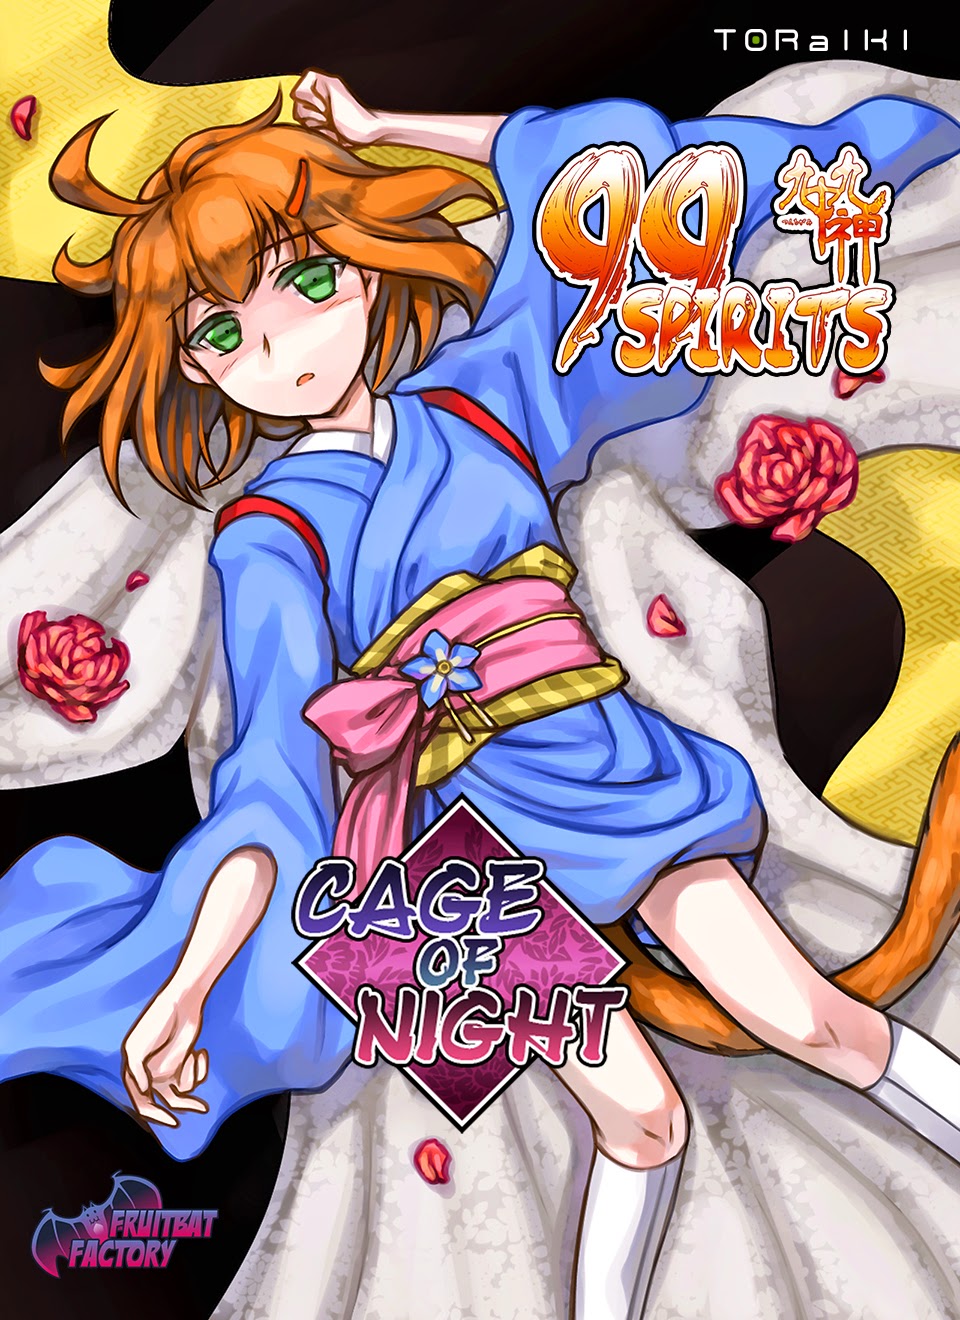 99 Spirits – Cage of Night free download